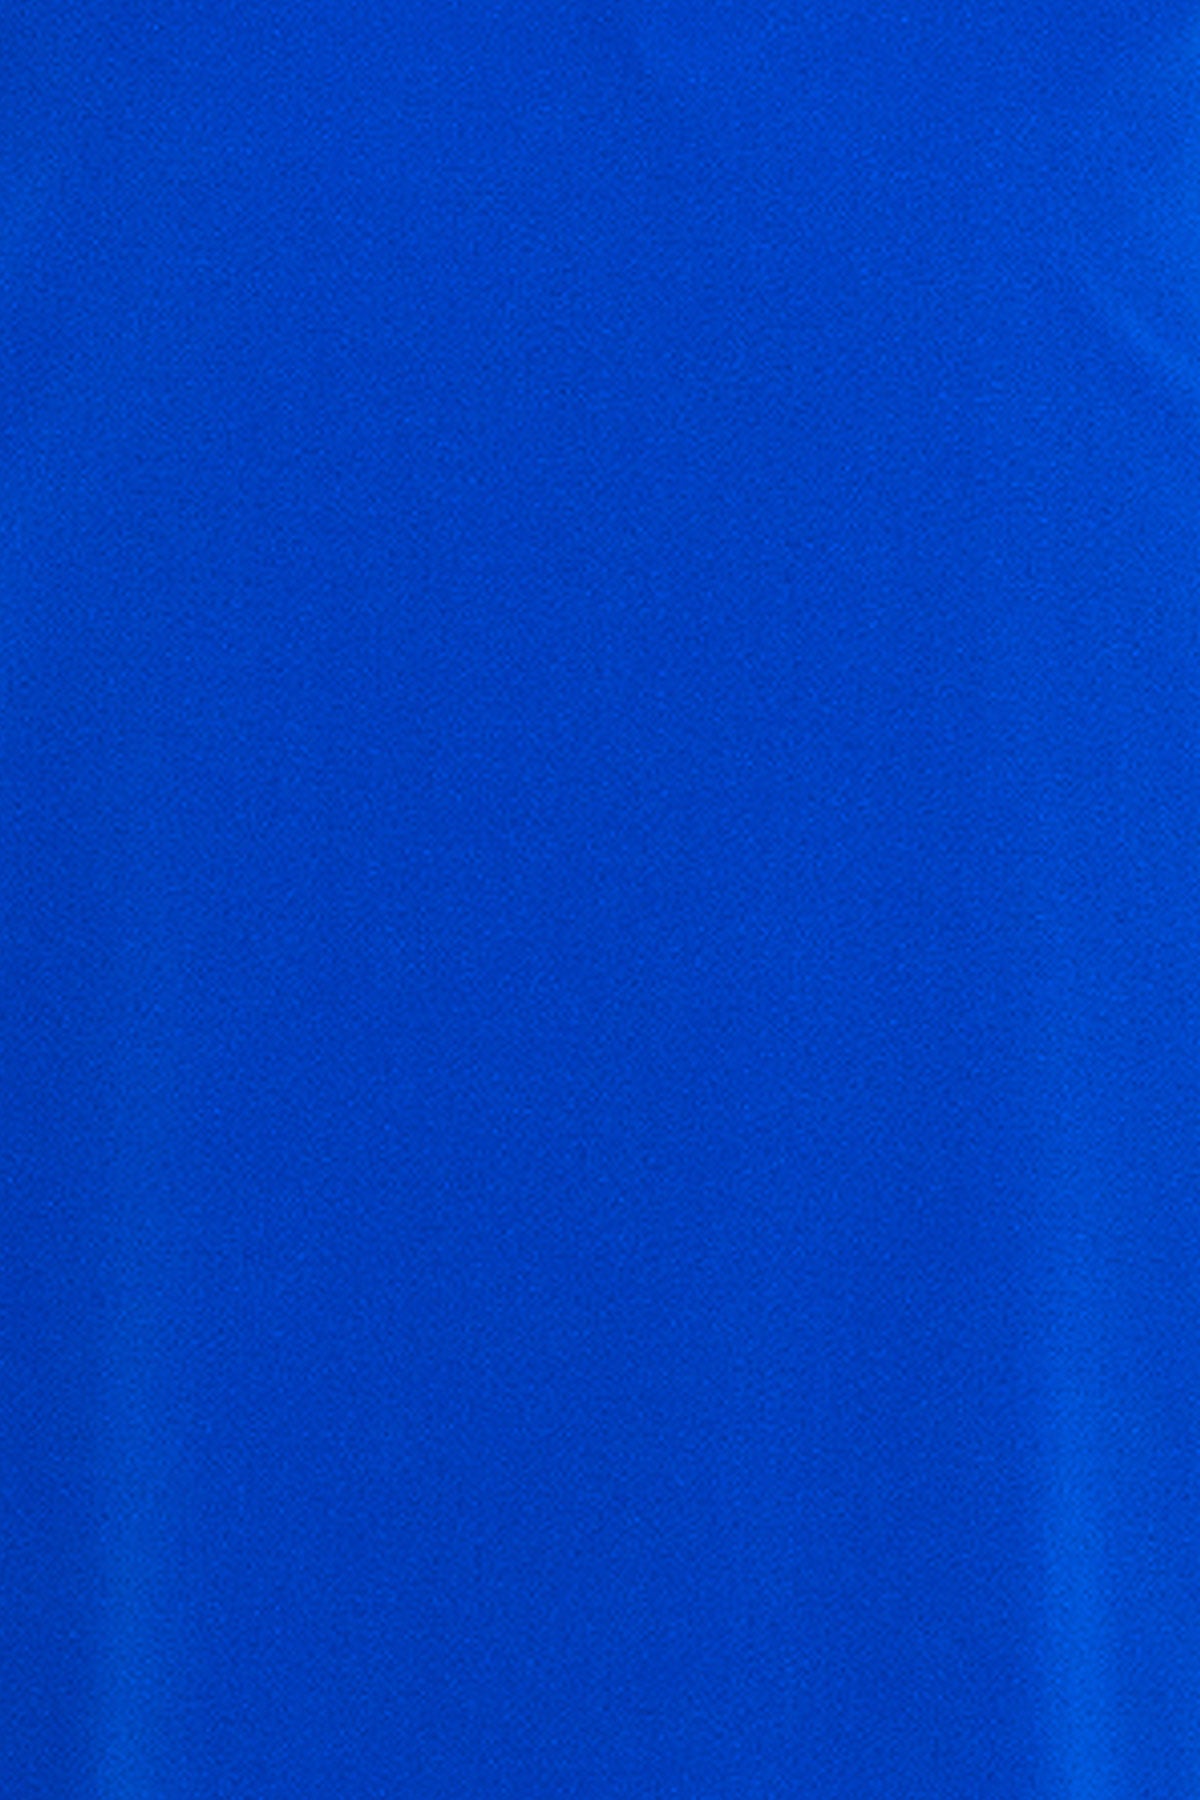 Kimono albastru Confident Concept Store